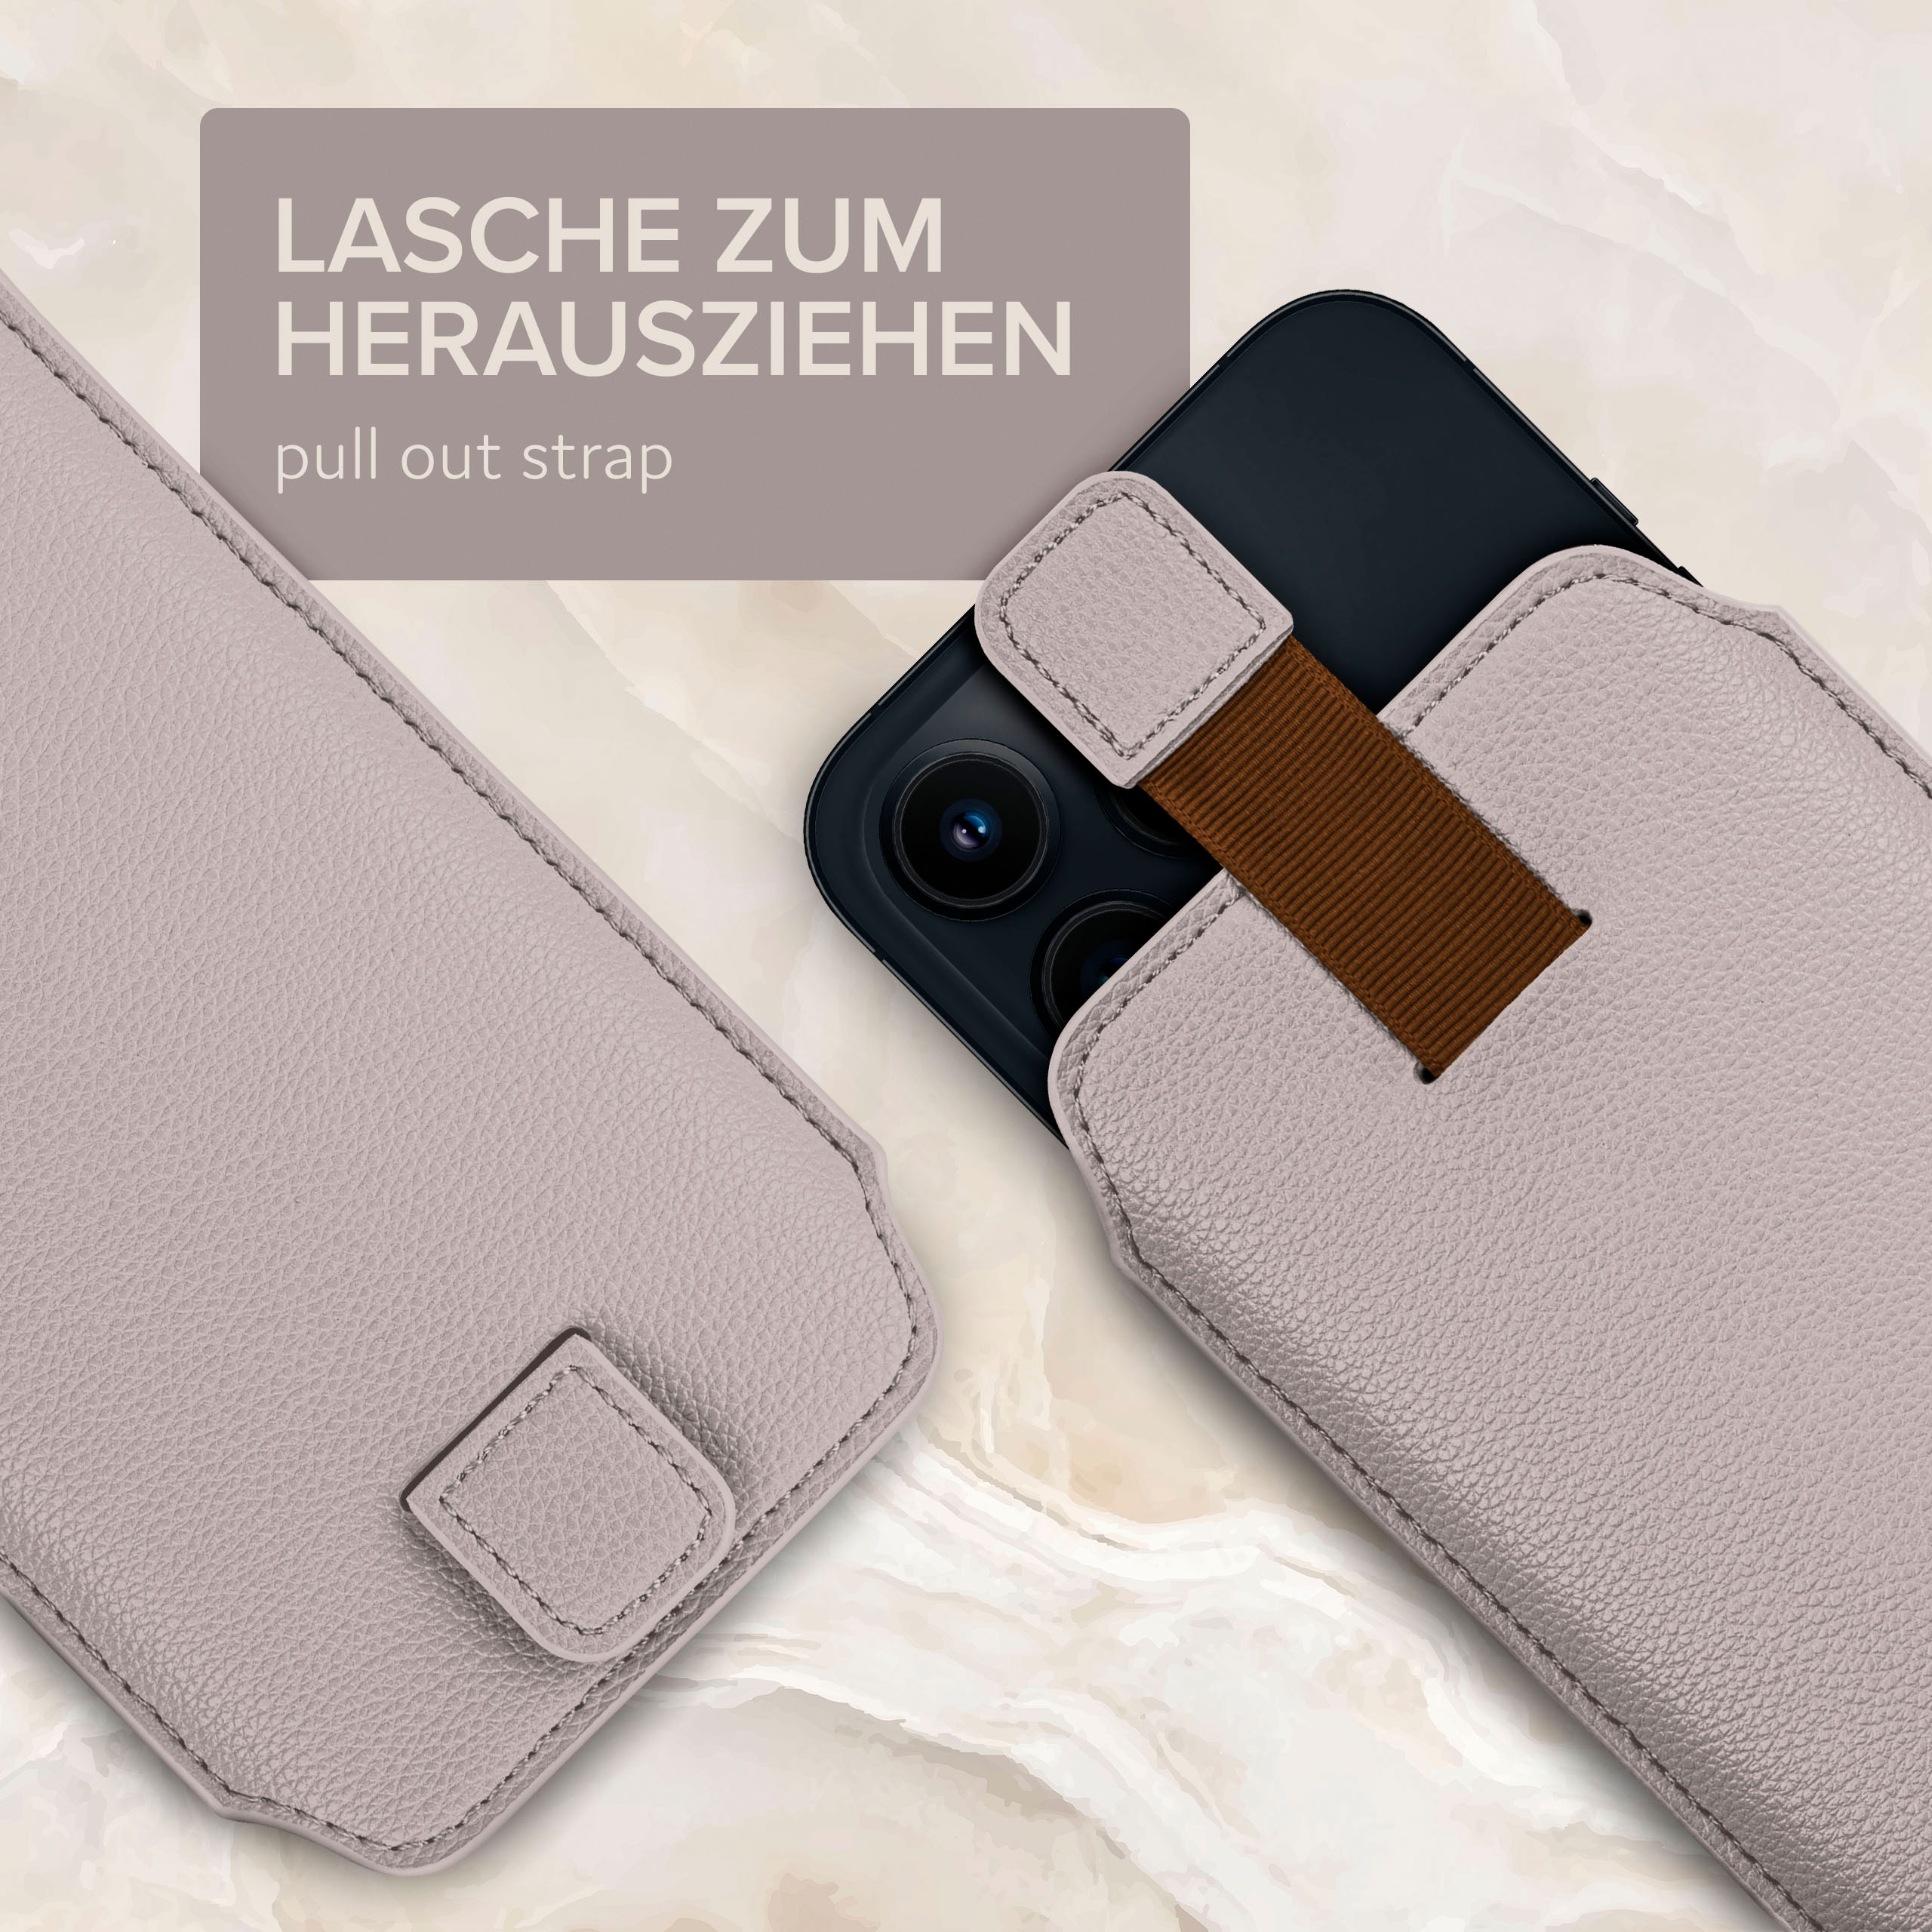 ONEFLOW Einsteckhülle mit Galaxy Samsung, Full Hellgrau Zuglasche, (2015), A5 Cover